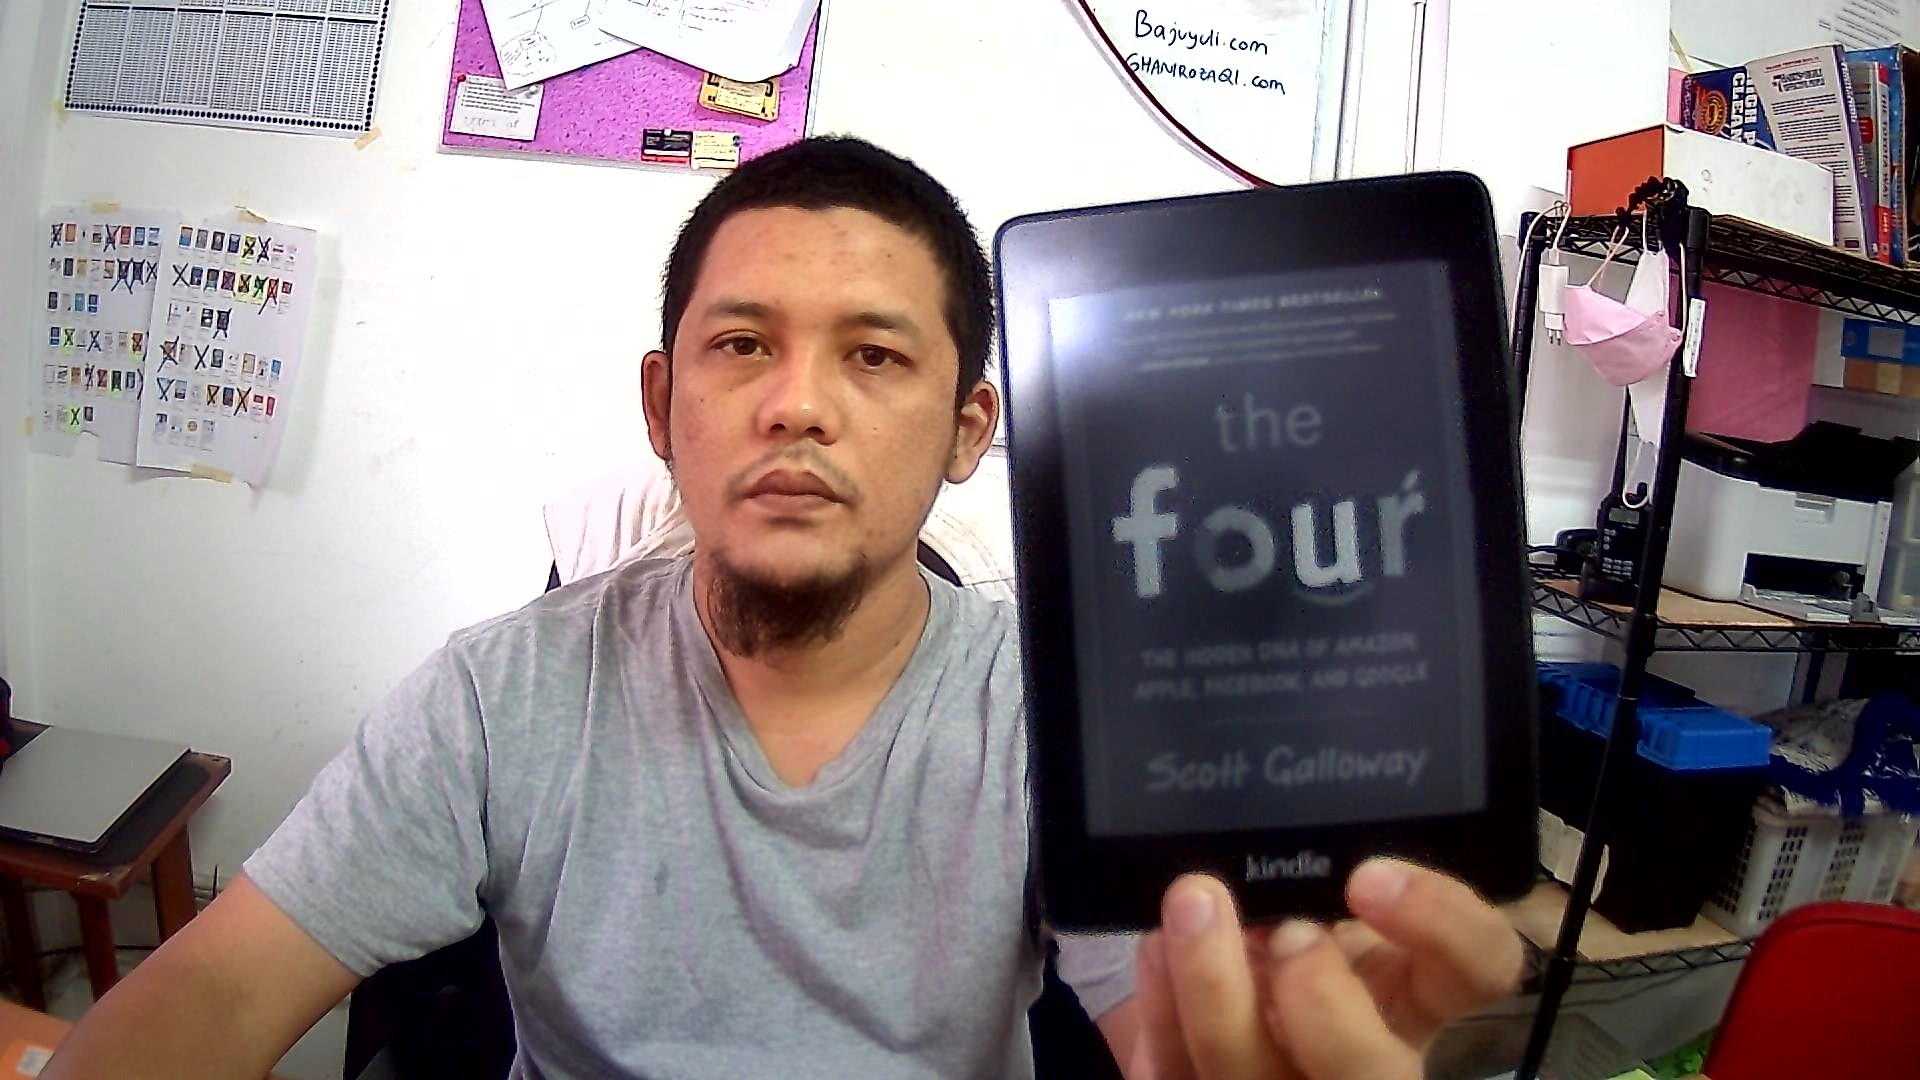 buku The Four dan yang punya Blog ini